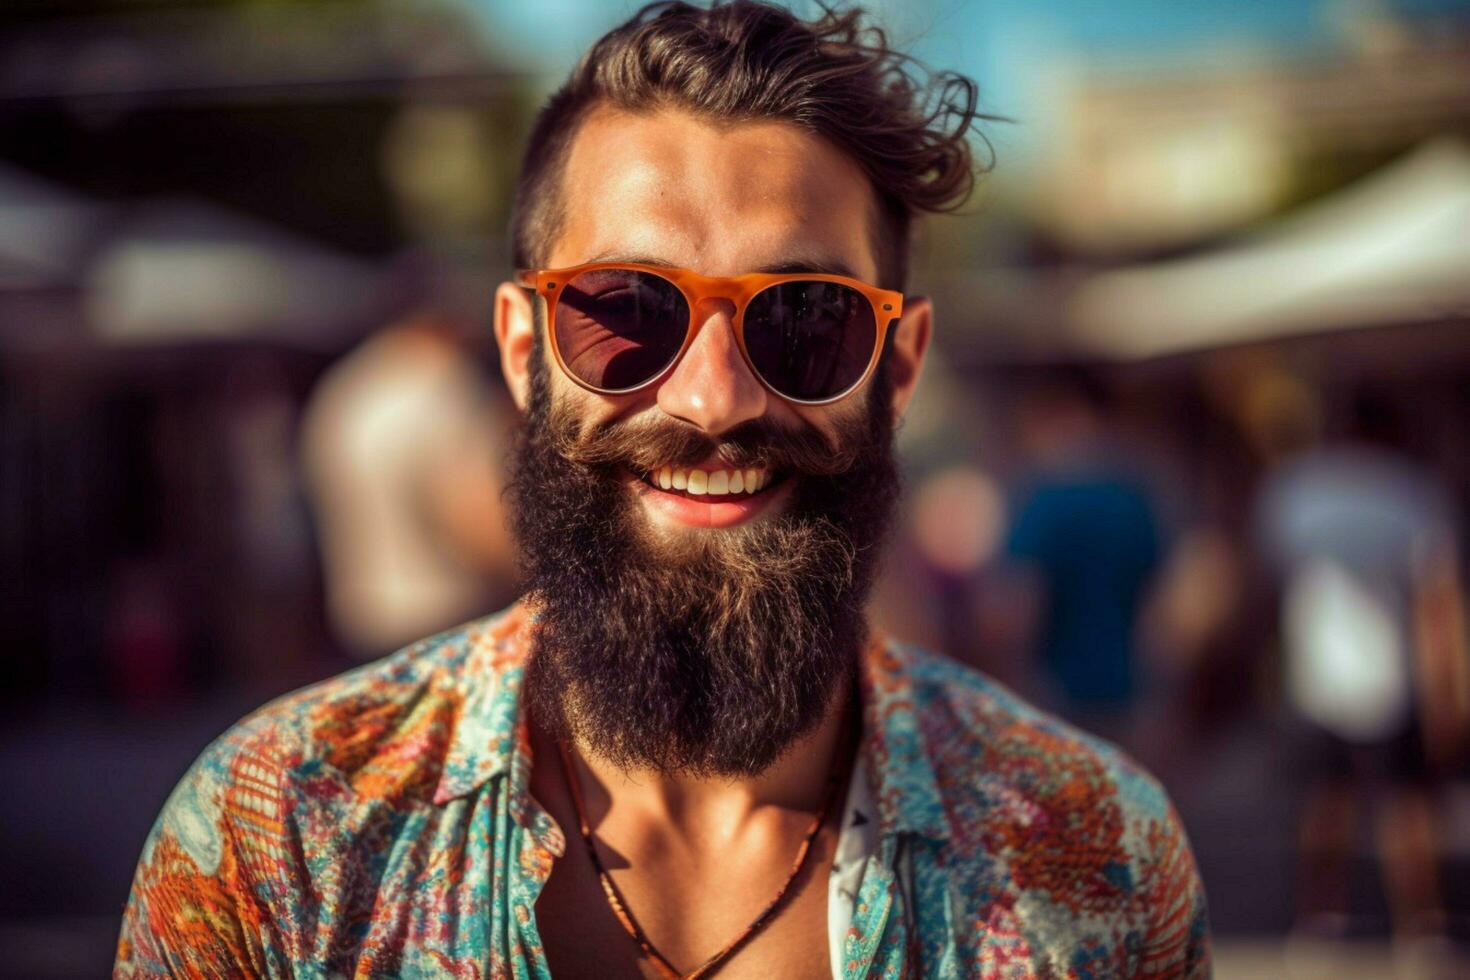 en man med en skägg och solglasögon ler för de foto